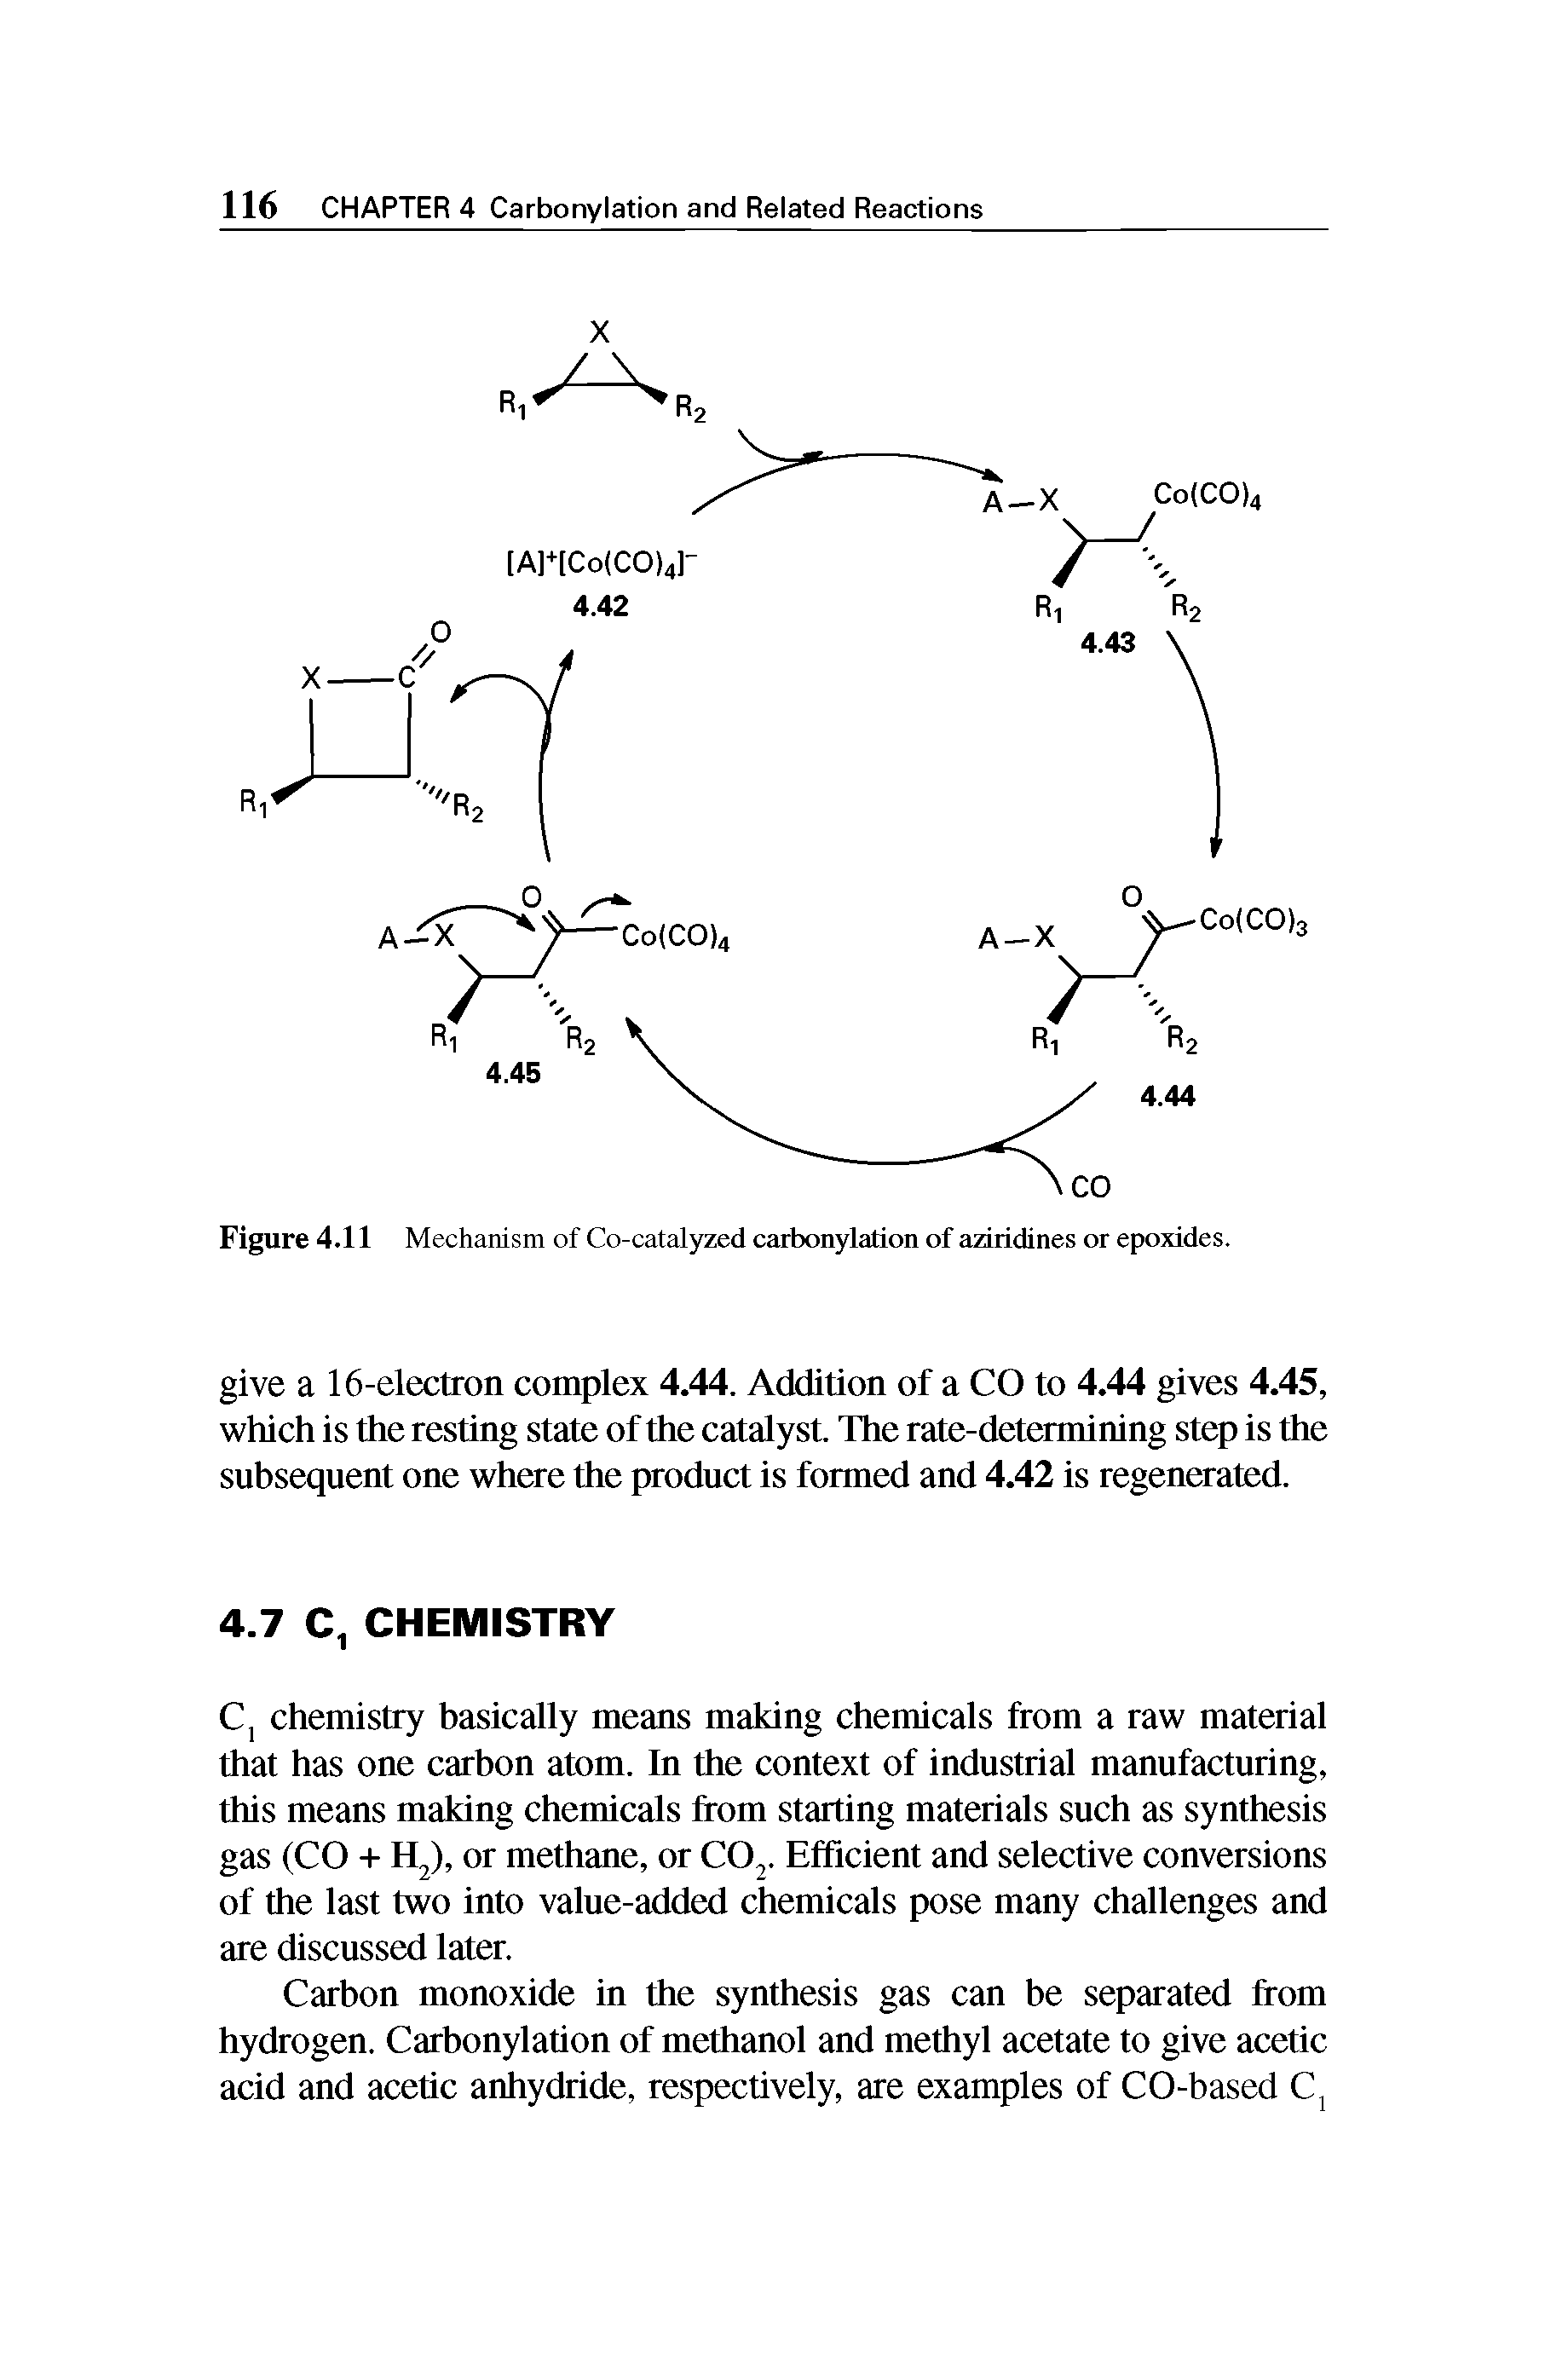 Figure 4.11 Mechanism of Co-catalyzed carbonylation of aziridines or epoxides.